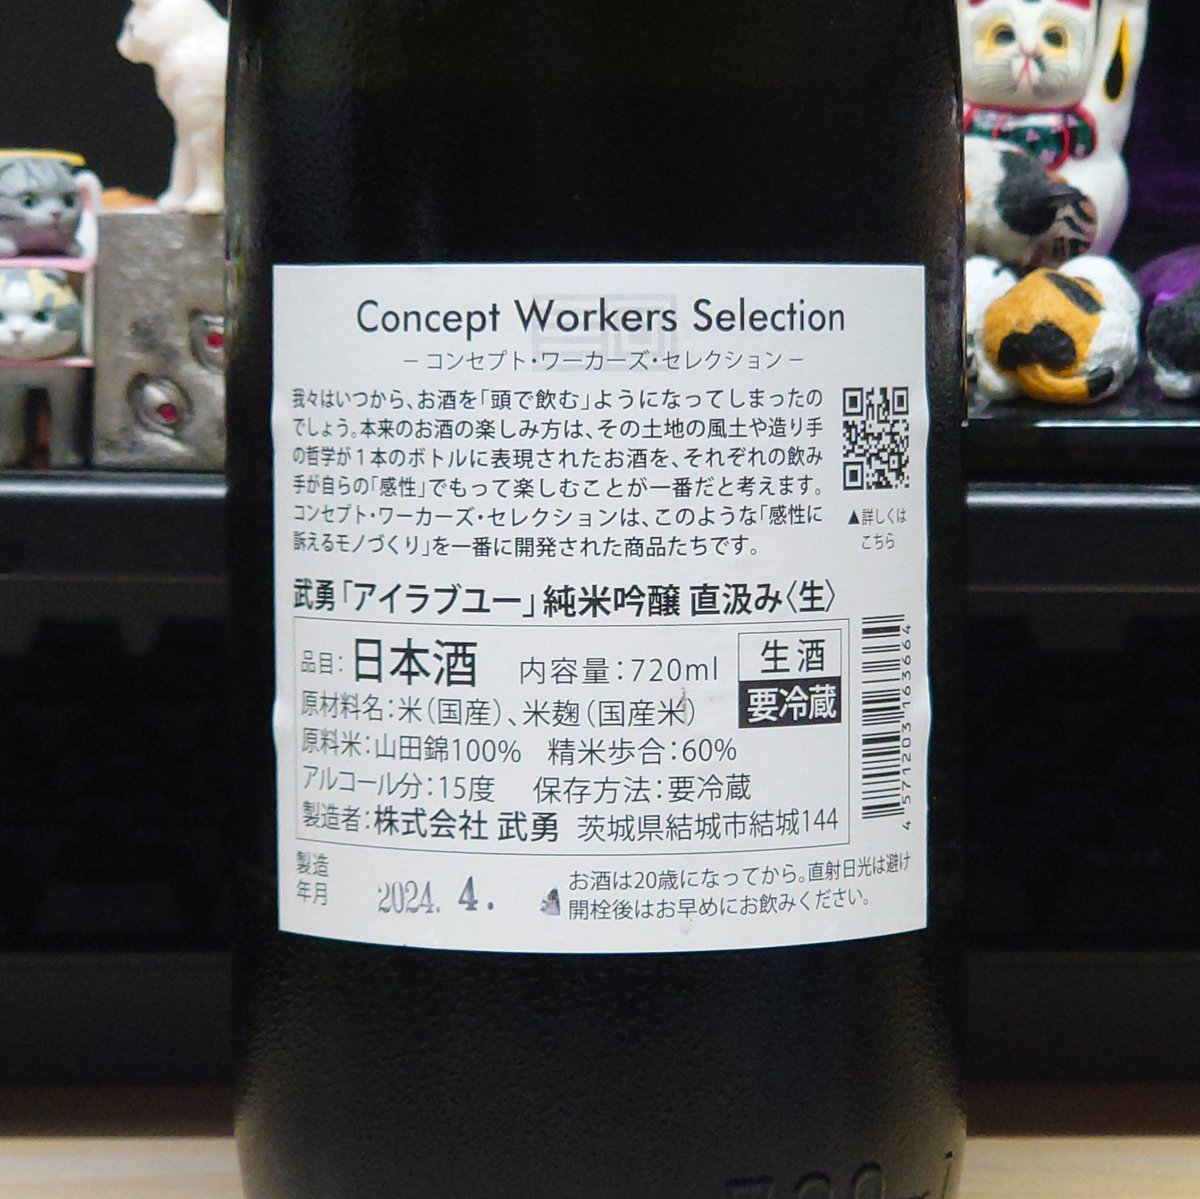 #武勇
『アイラブユー』
猫に惹かれて久しぶりの日本酒。
微炭酸なピリピリ感とスルスルいけるフルーティーさが旨い。
#酒のスマイル（@sakenosmile_oki）